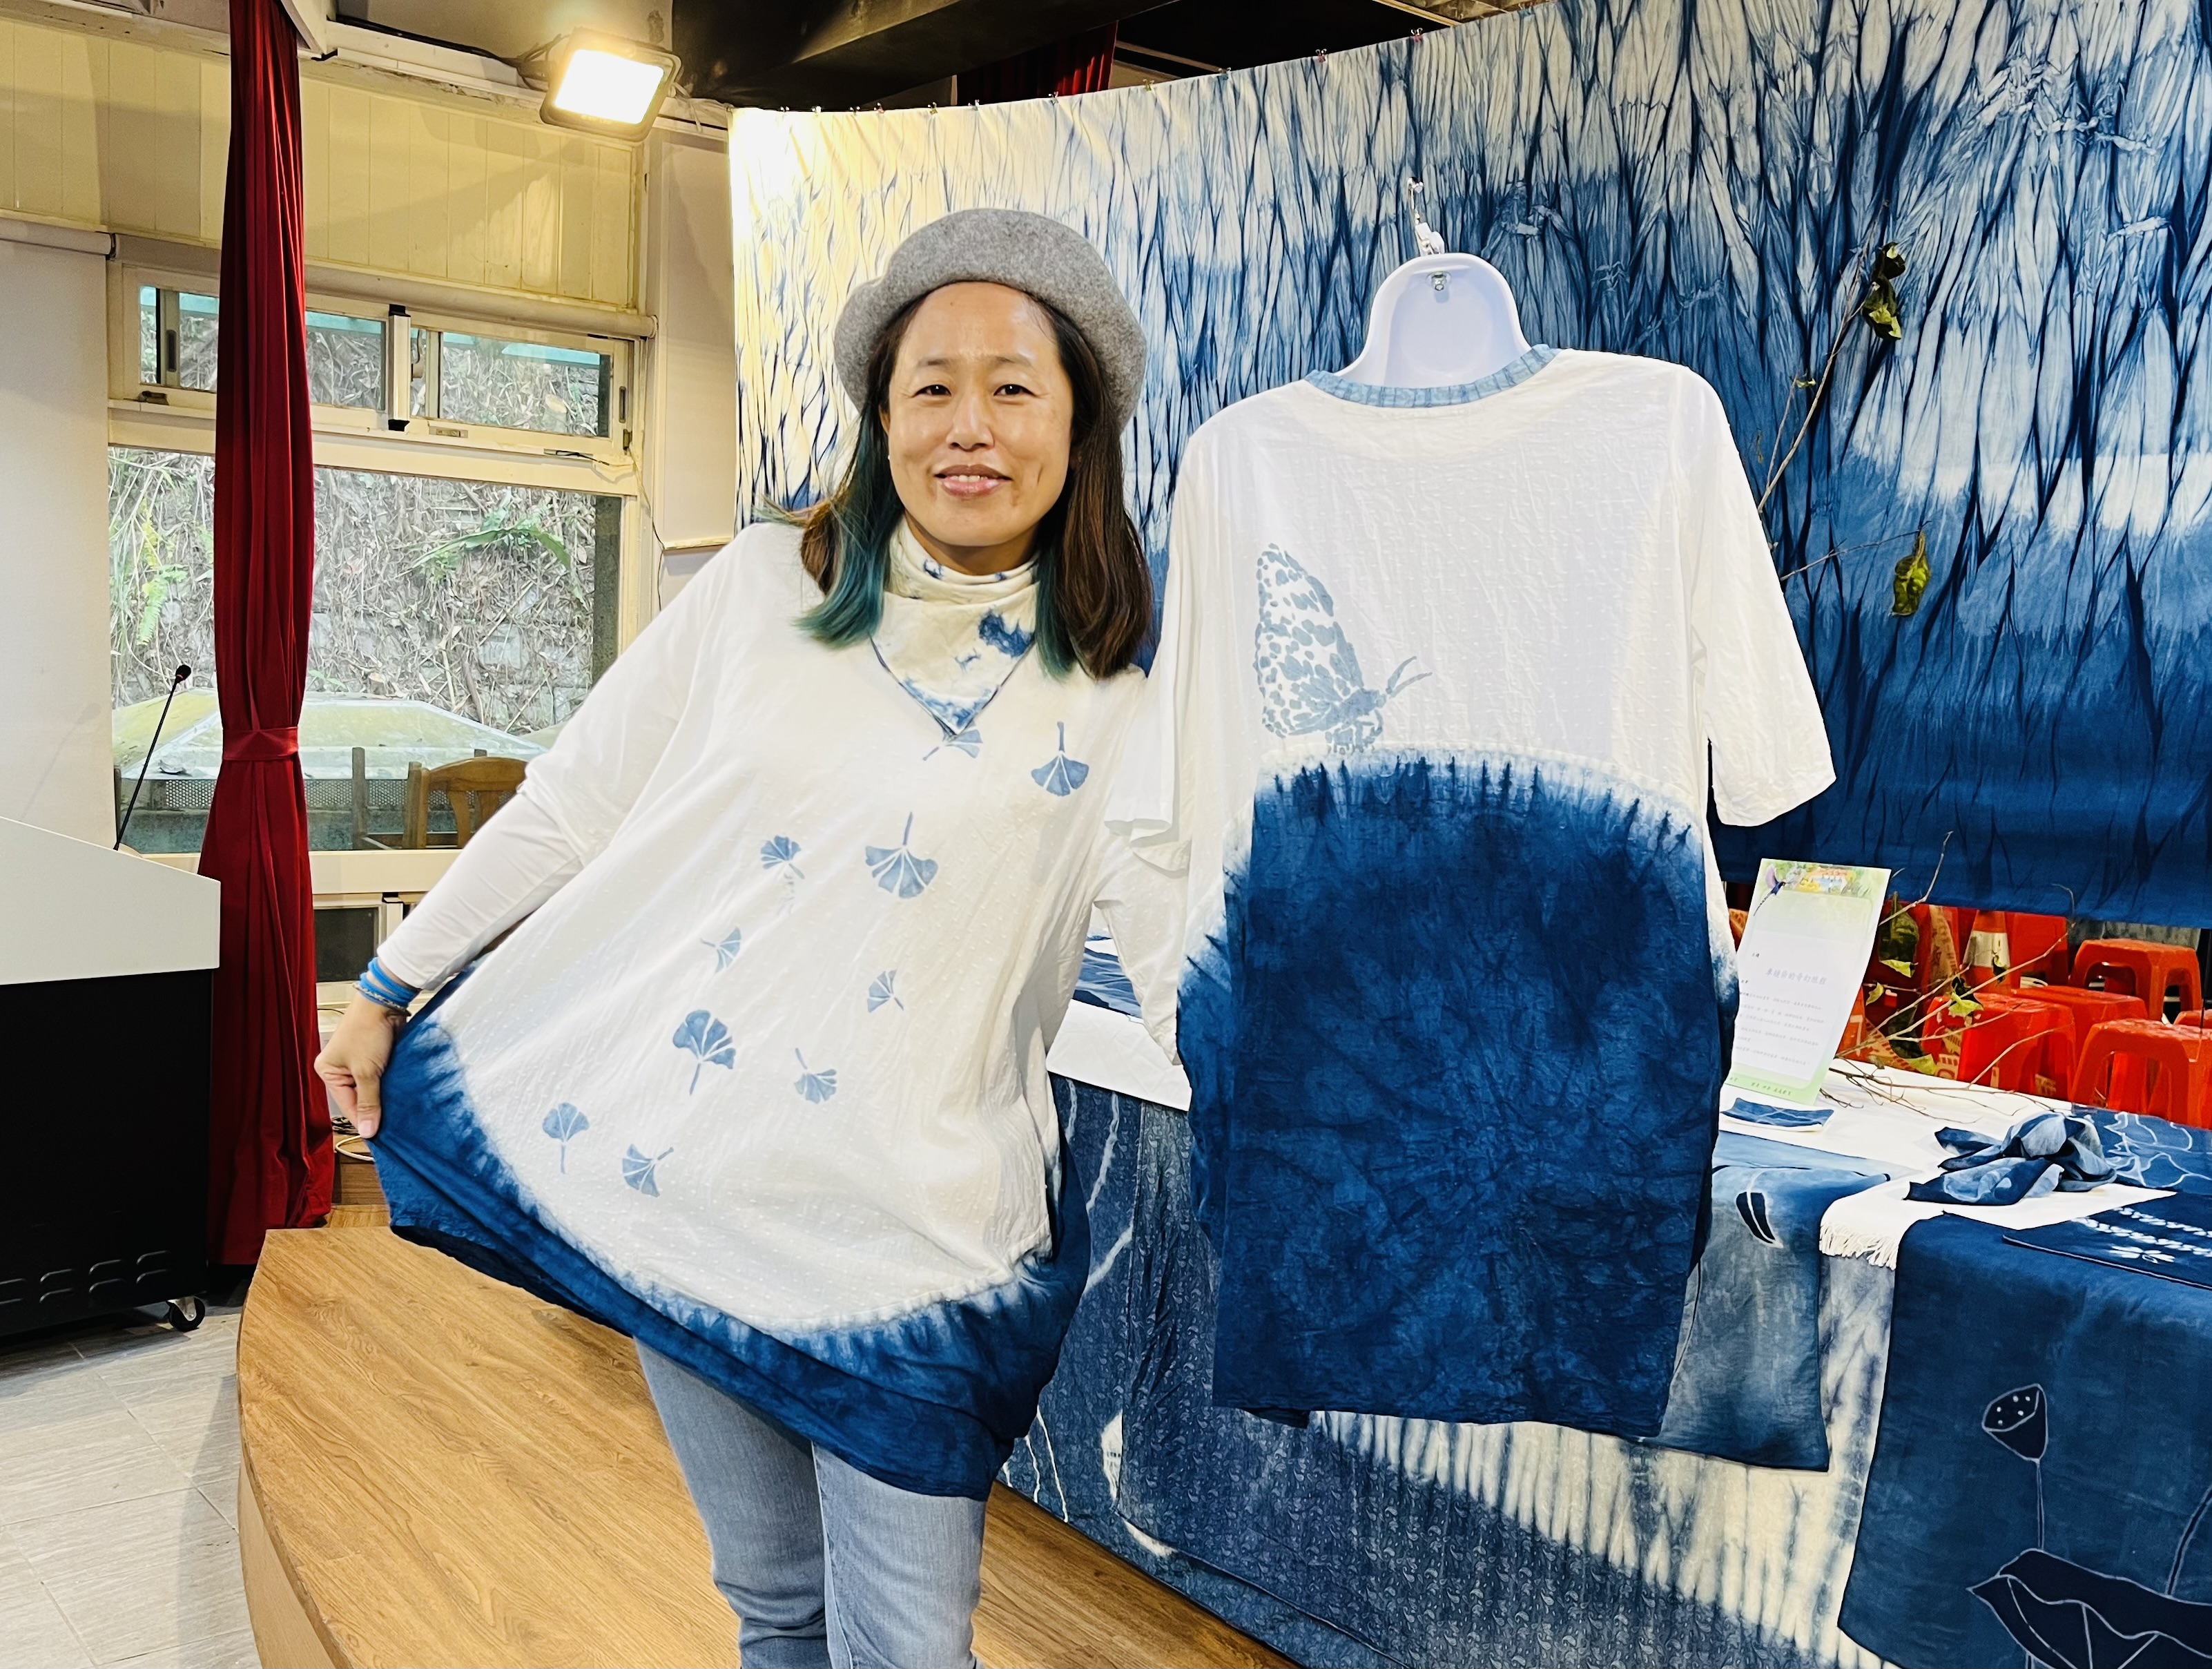 學員展示藍染作品「杏福花苞衣」